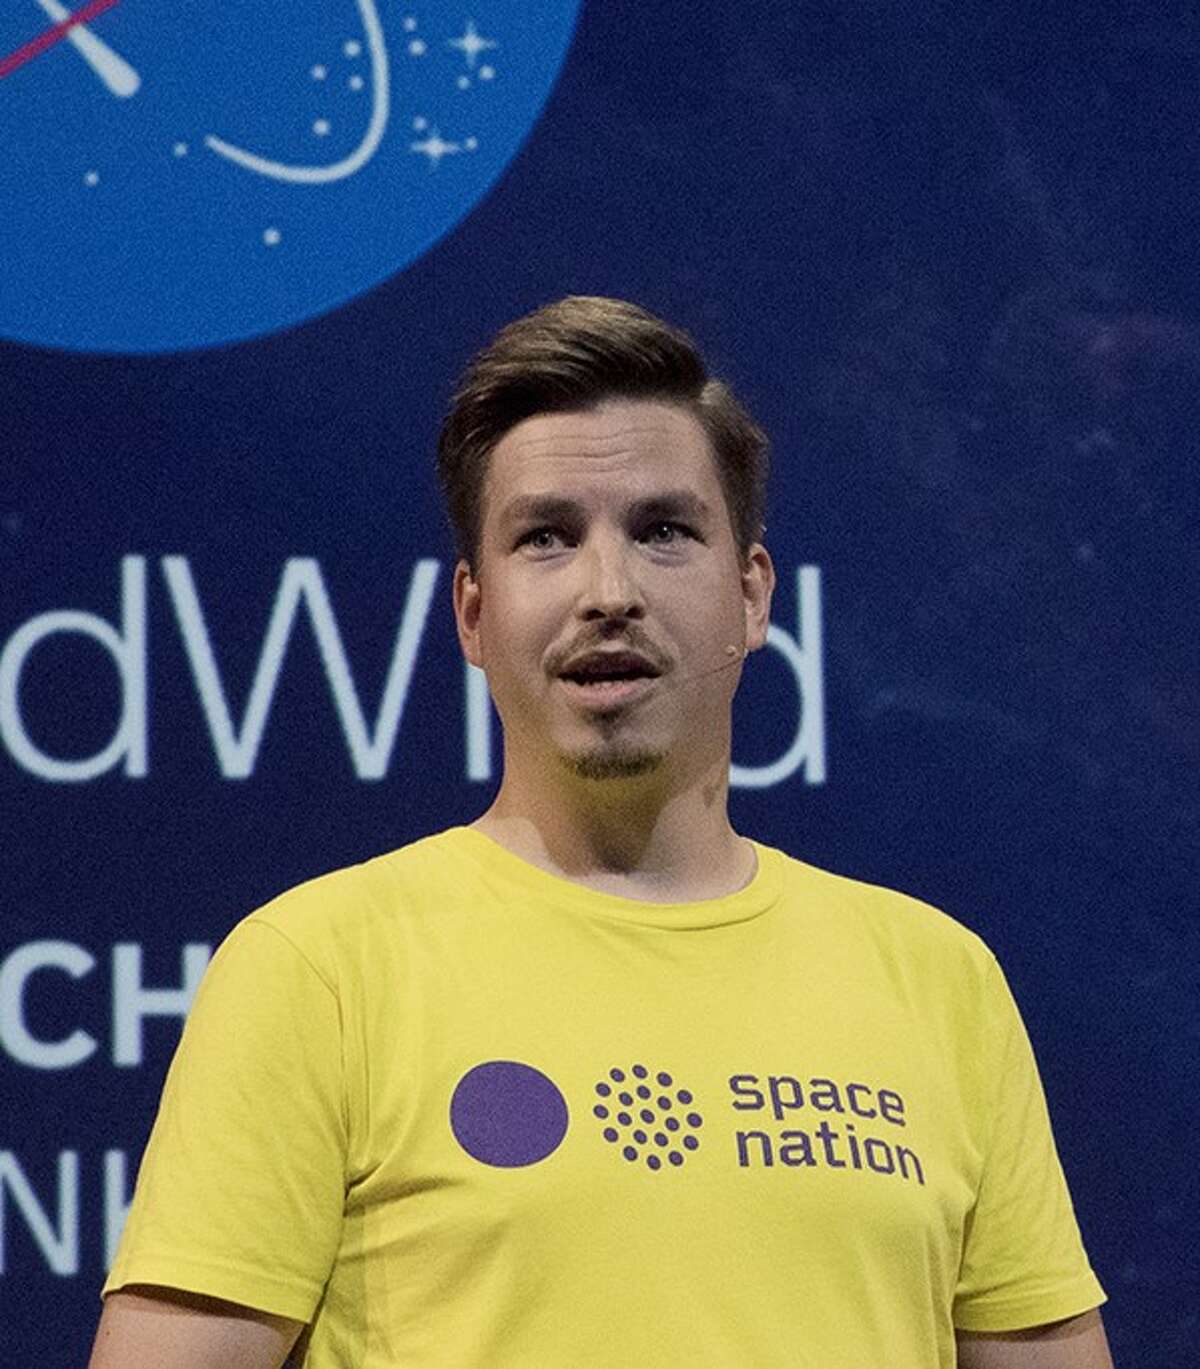 Kalle Vähä-Jaakkola, Captain and co-founder of Space Nation.